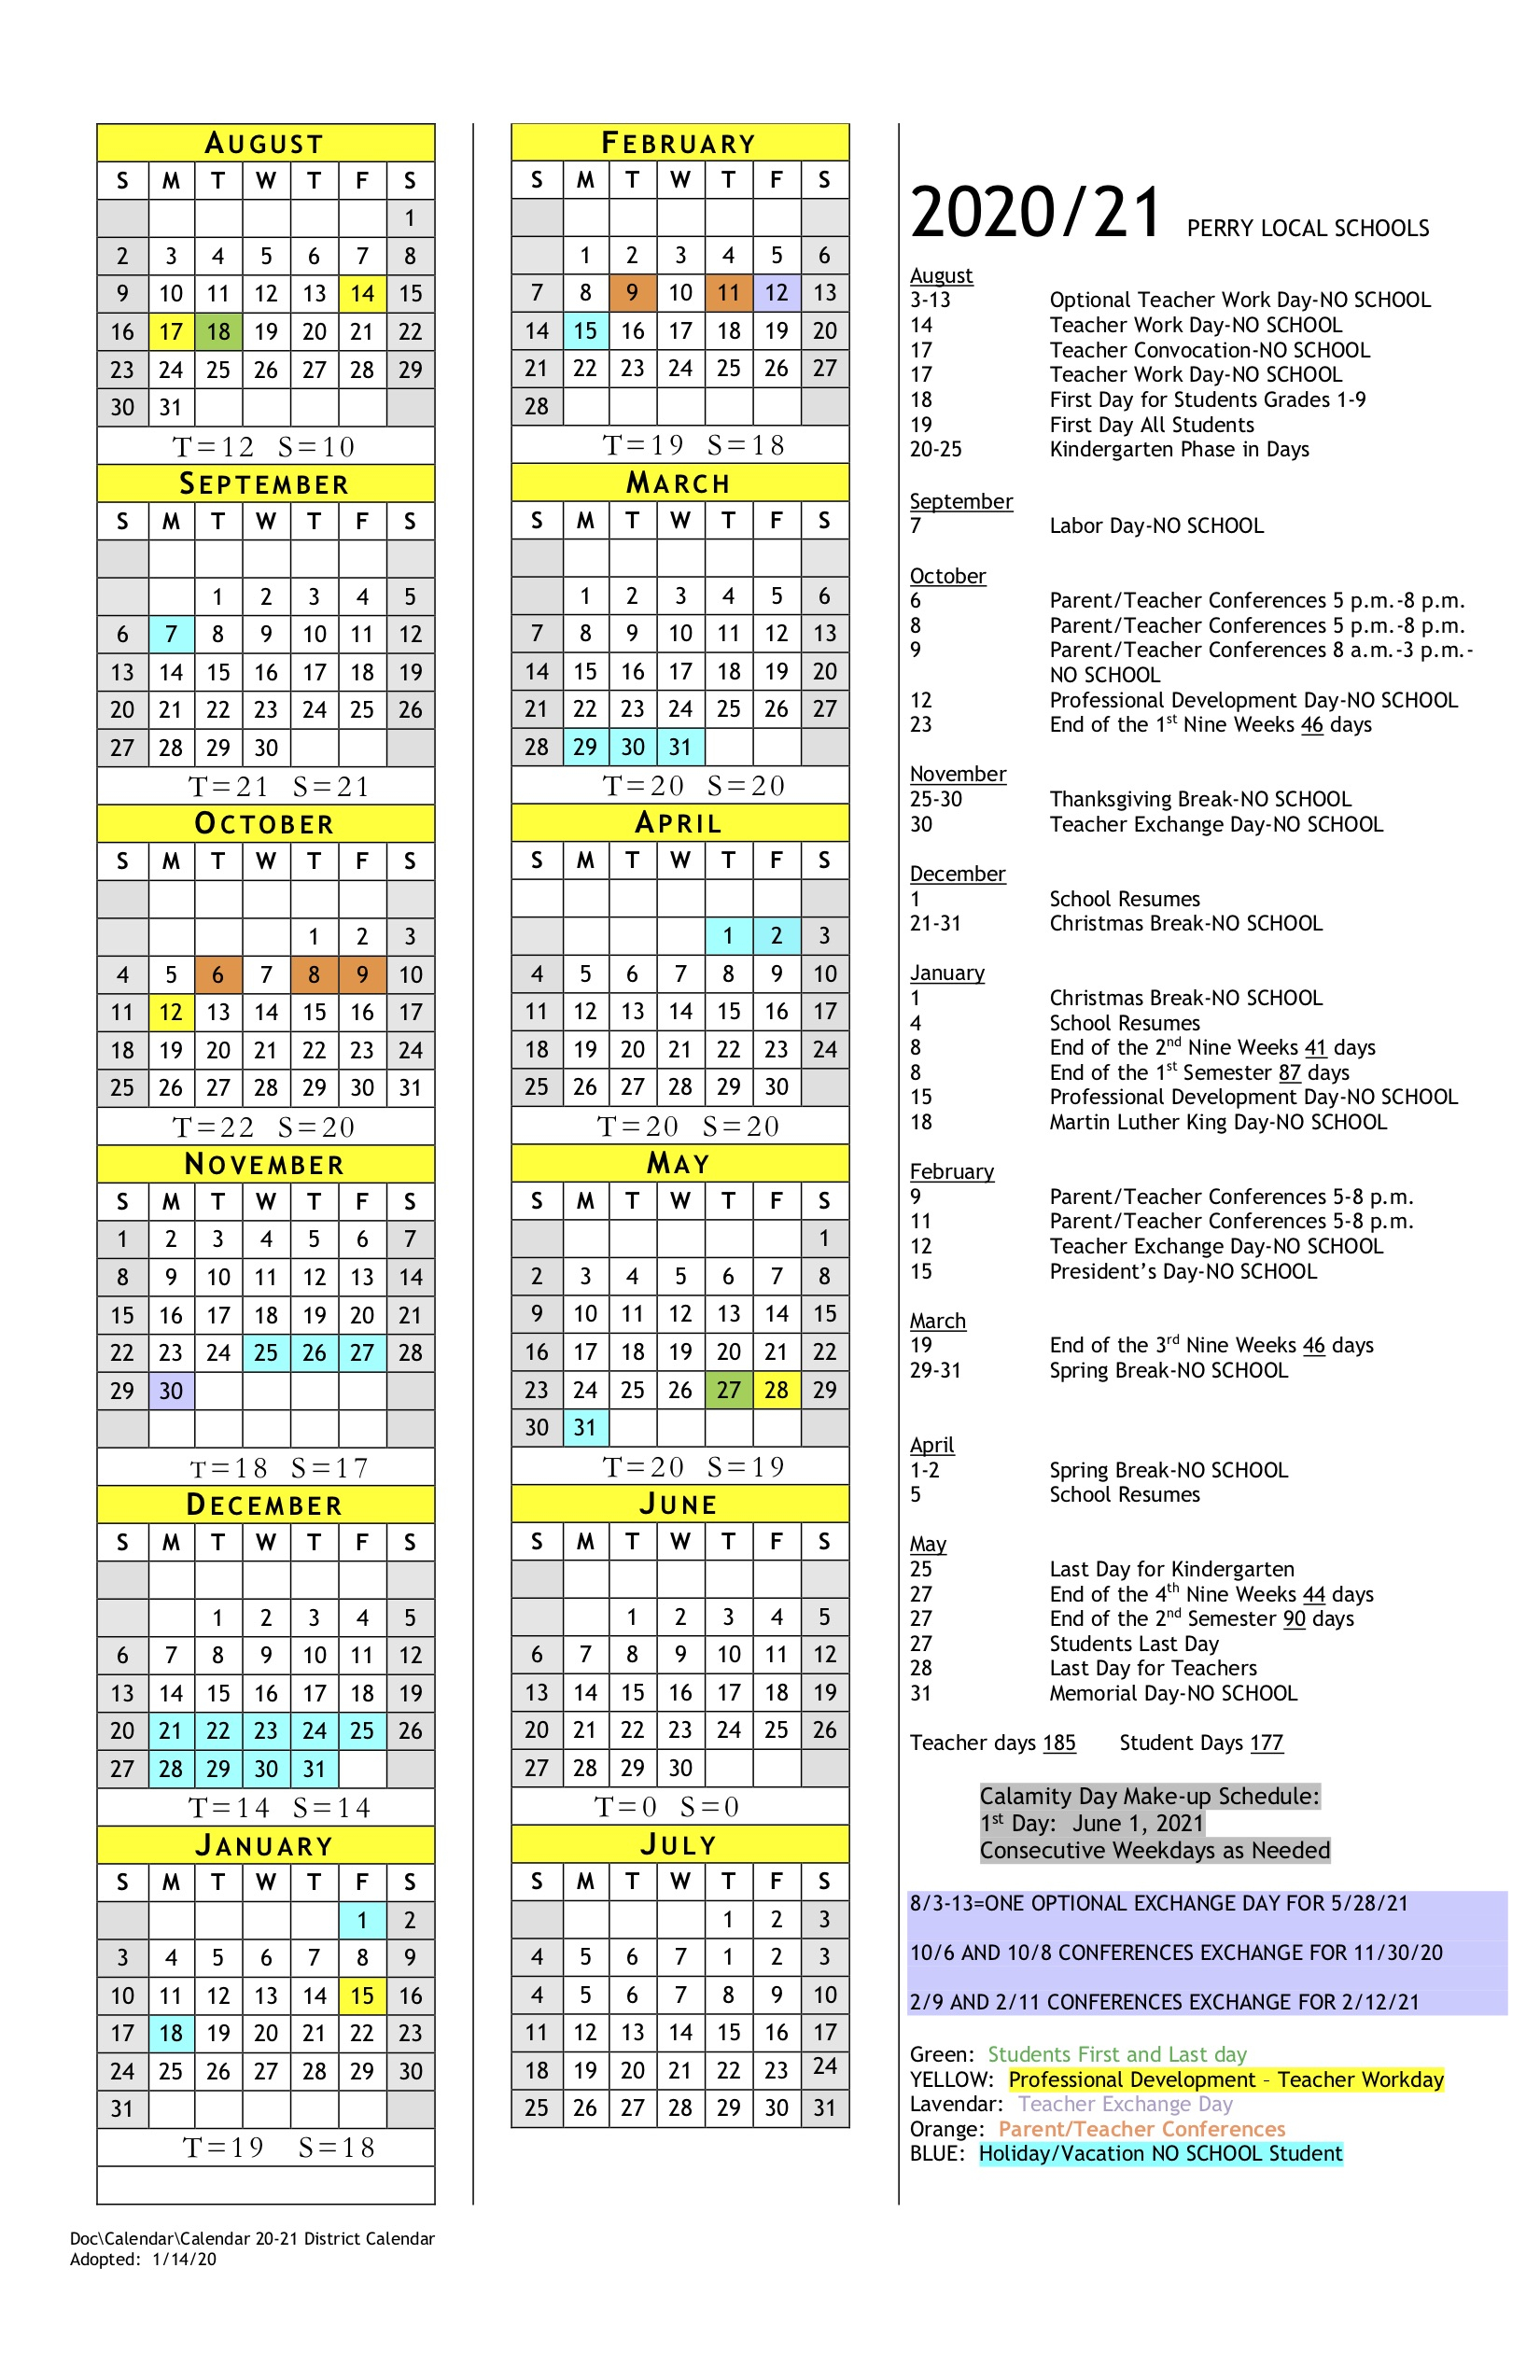 Barbour County Schools Calendar 2022 - Schoolcalendars.net